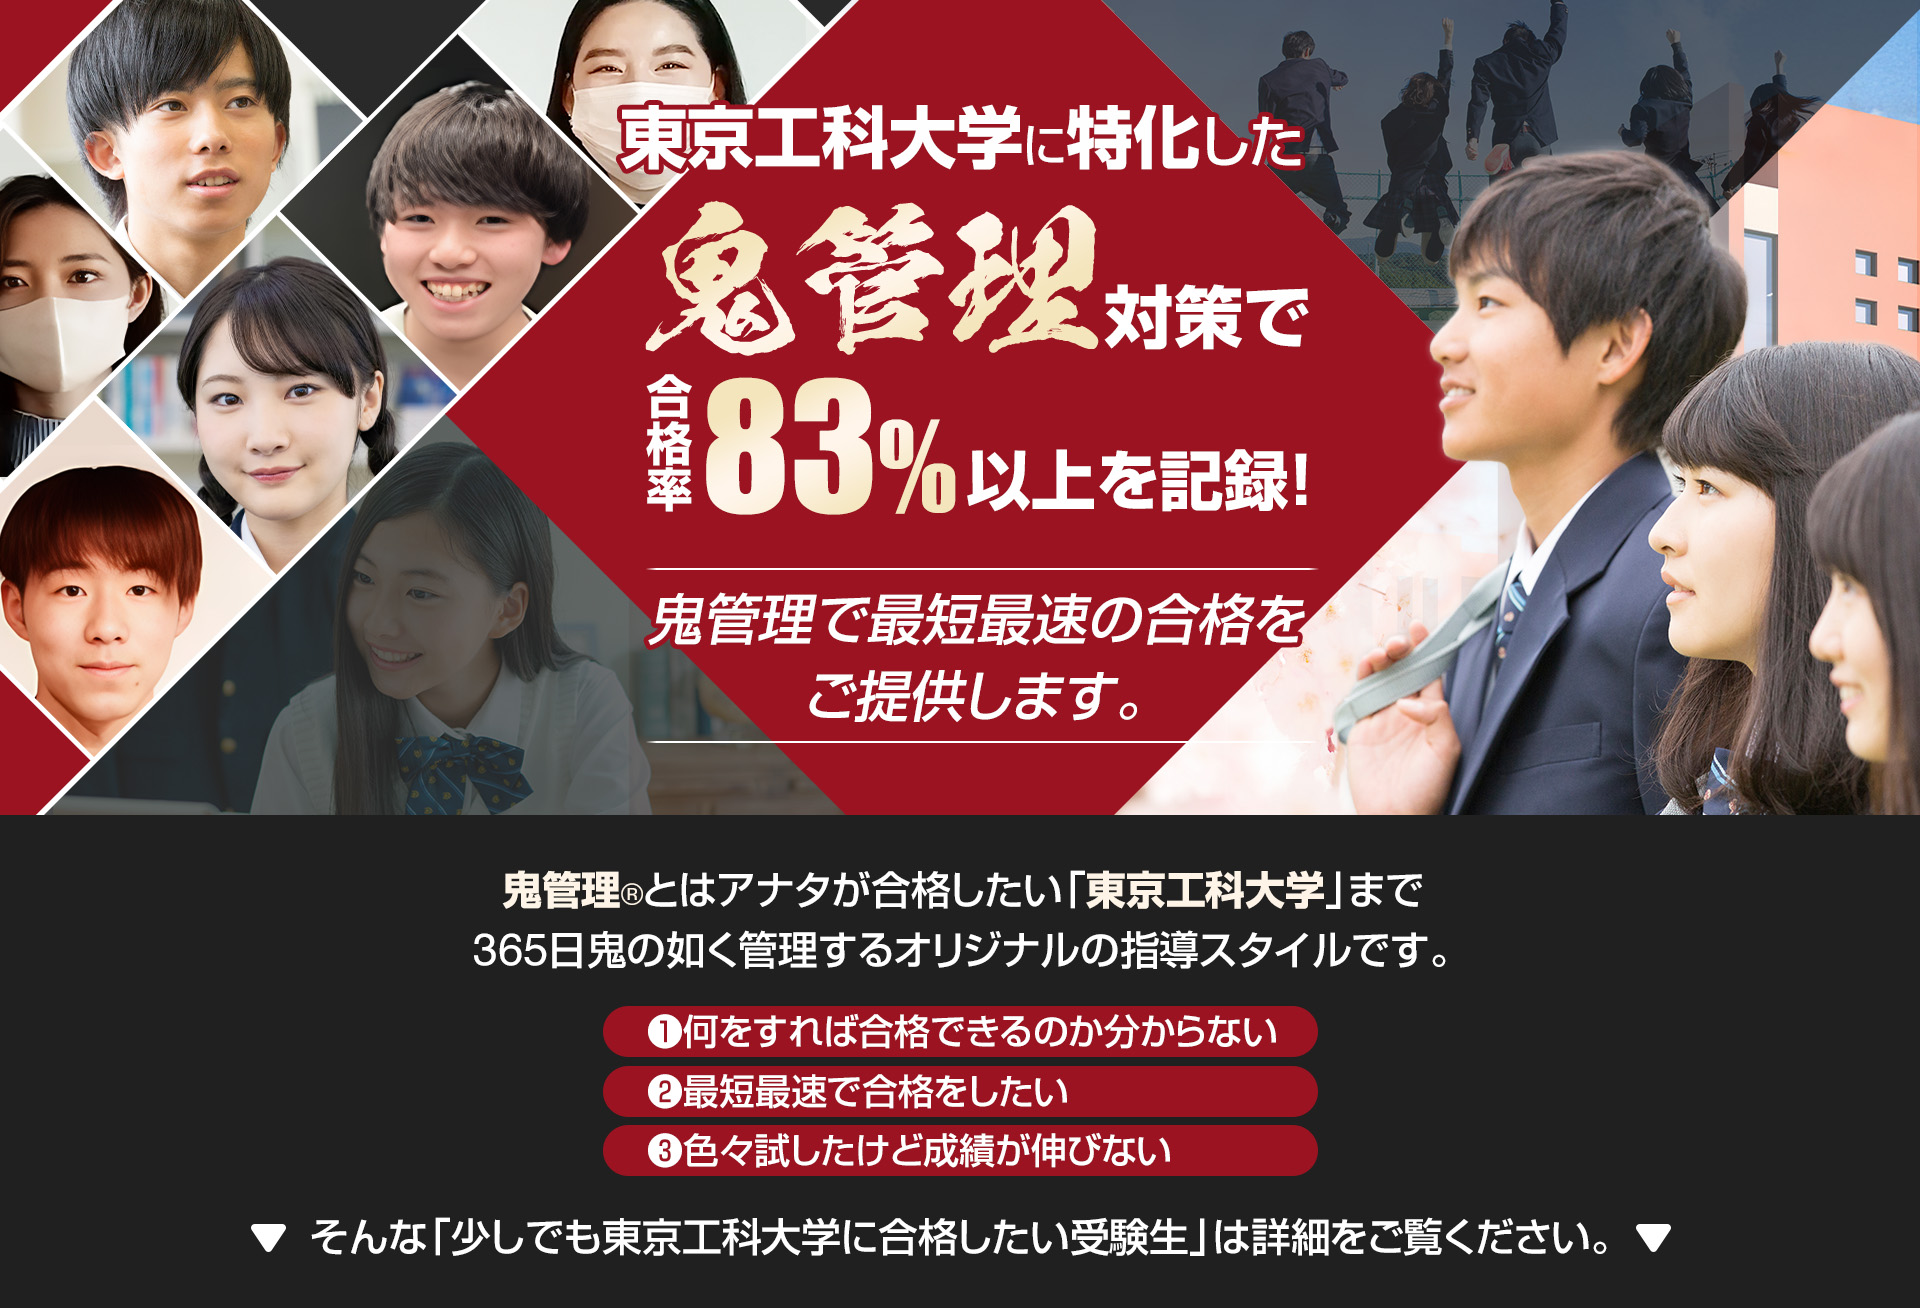 東京工科大学に特化した鬼管理対策で合格率83％以上を記録。鬼管理でアナタが合格したい東京工科大学への最短最速の合格を提供します。